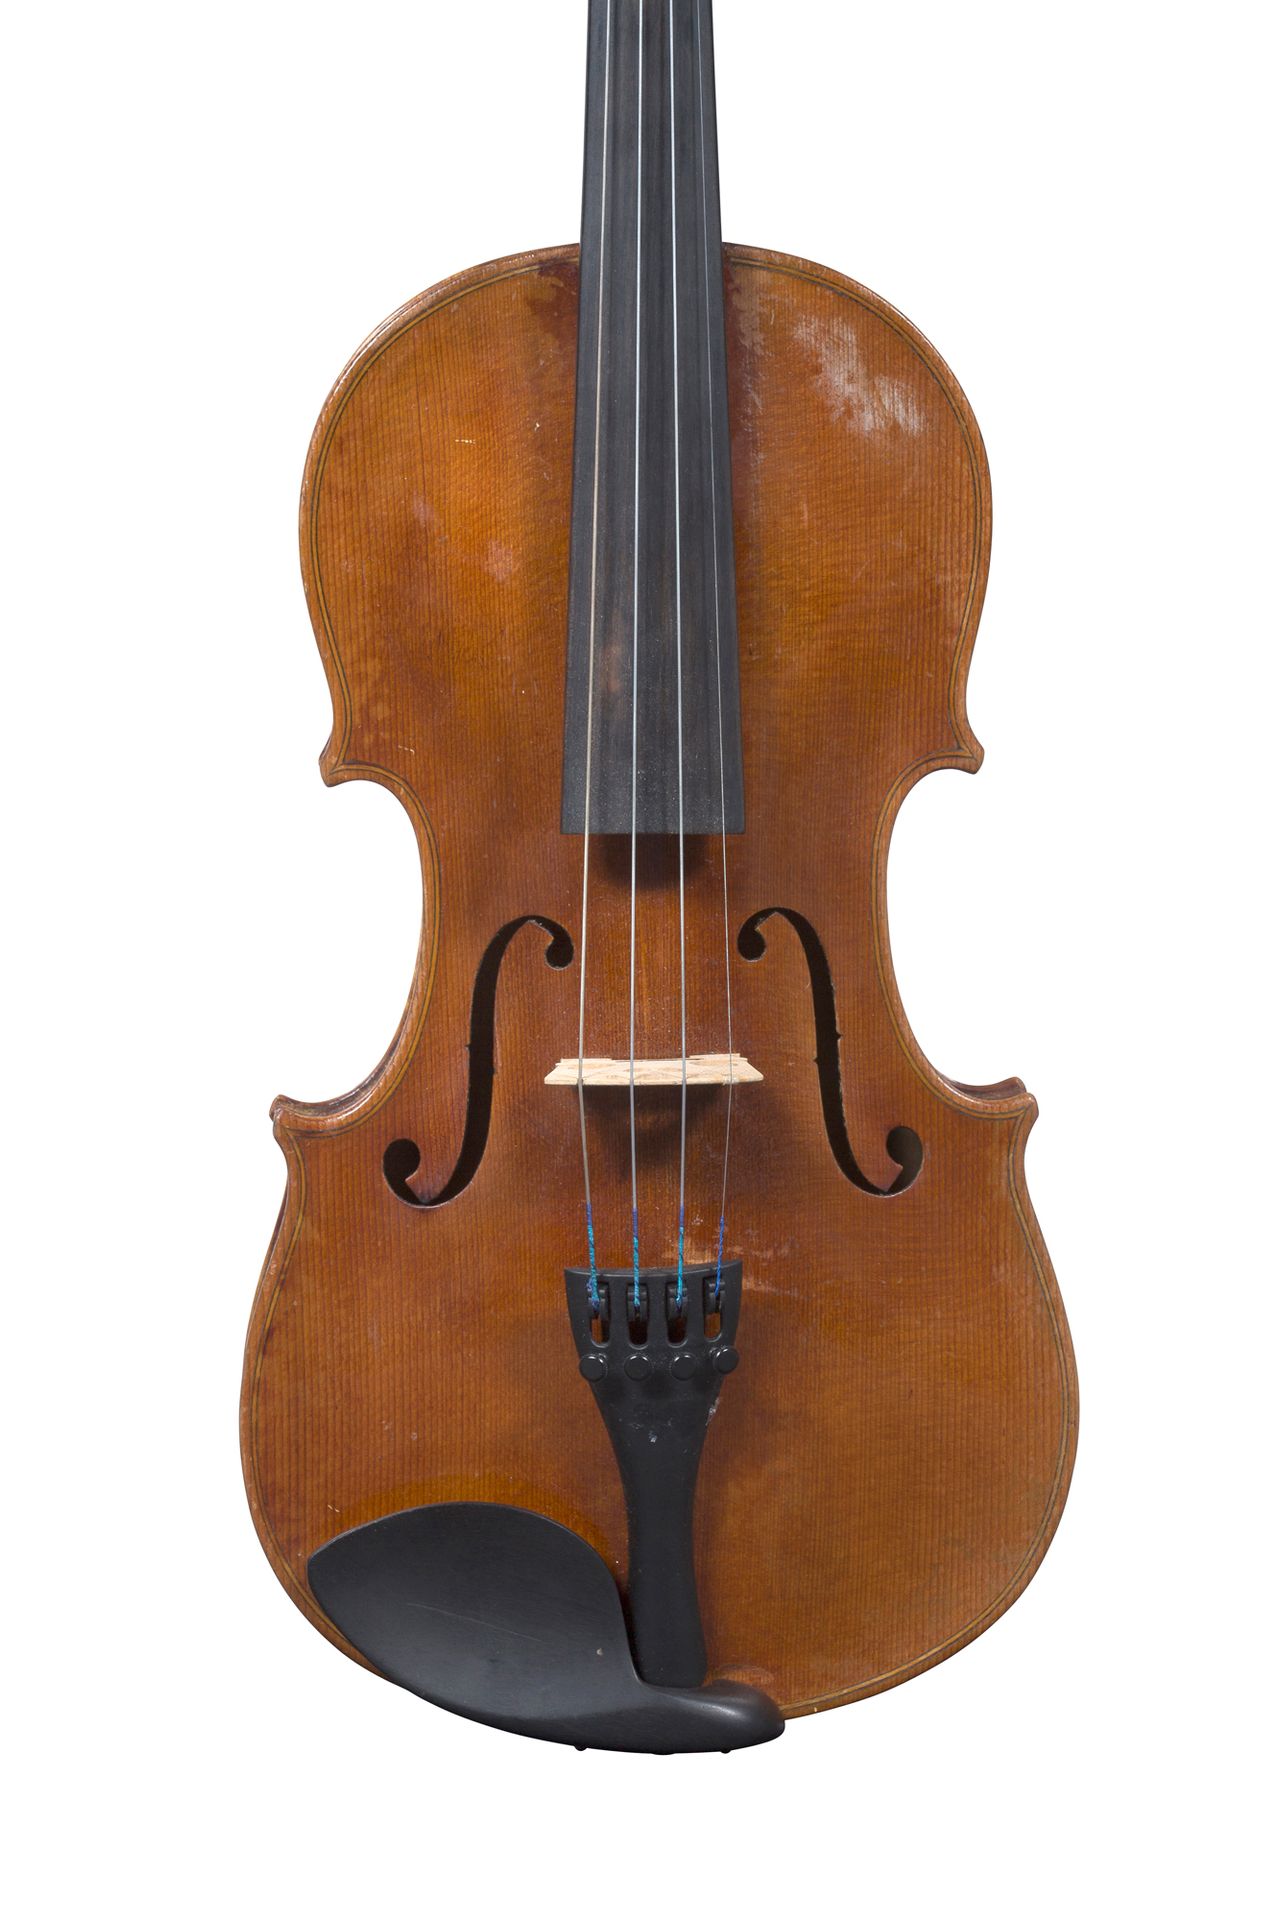 Null 德国小提琴
1900-20年左右的作品
带有JB Schweitzer 1813的标签
状况良好
随时可以演奏 
背面有359毫米